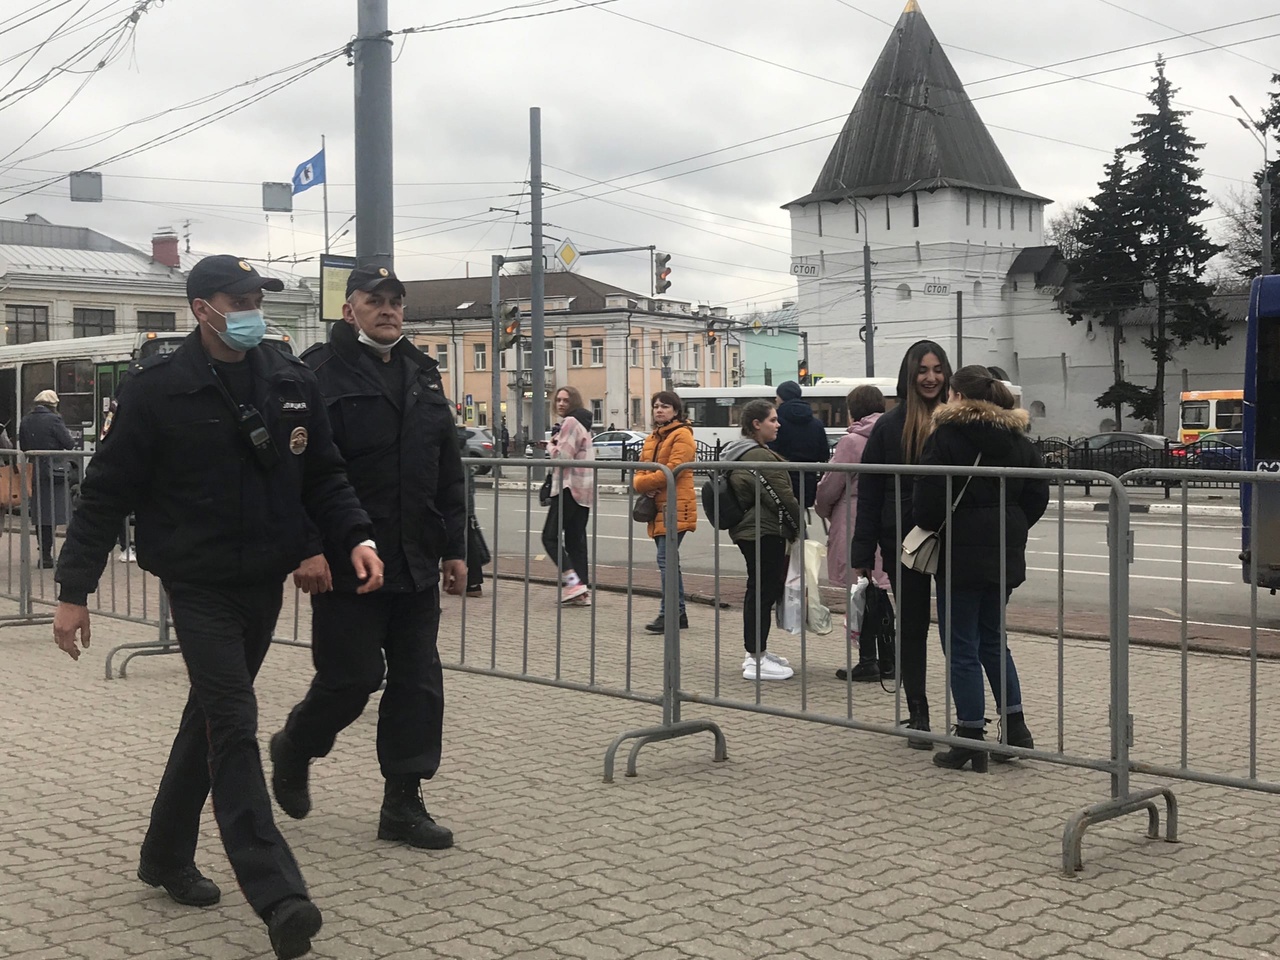 Камеры, полицейские, дружинники: в Ярославле срочно усилили меры безопасности